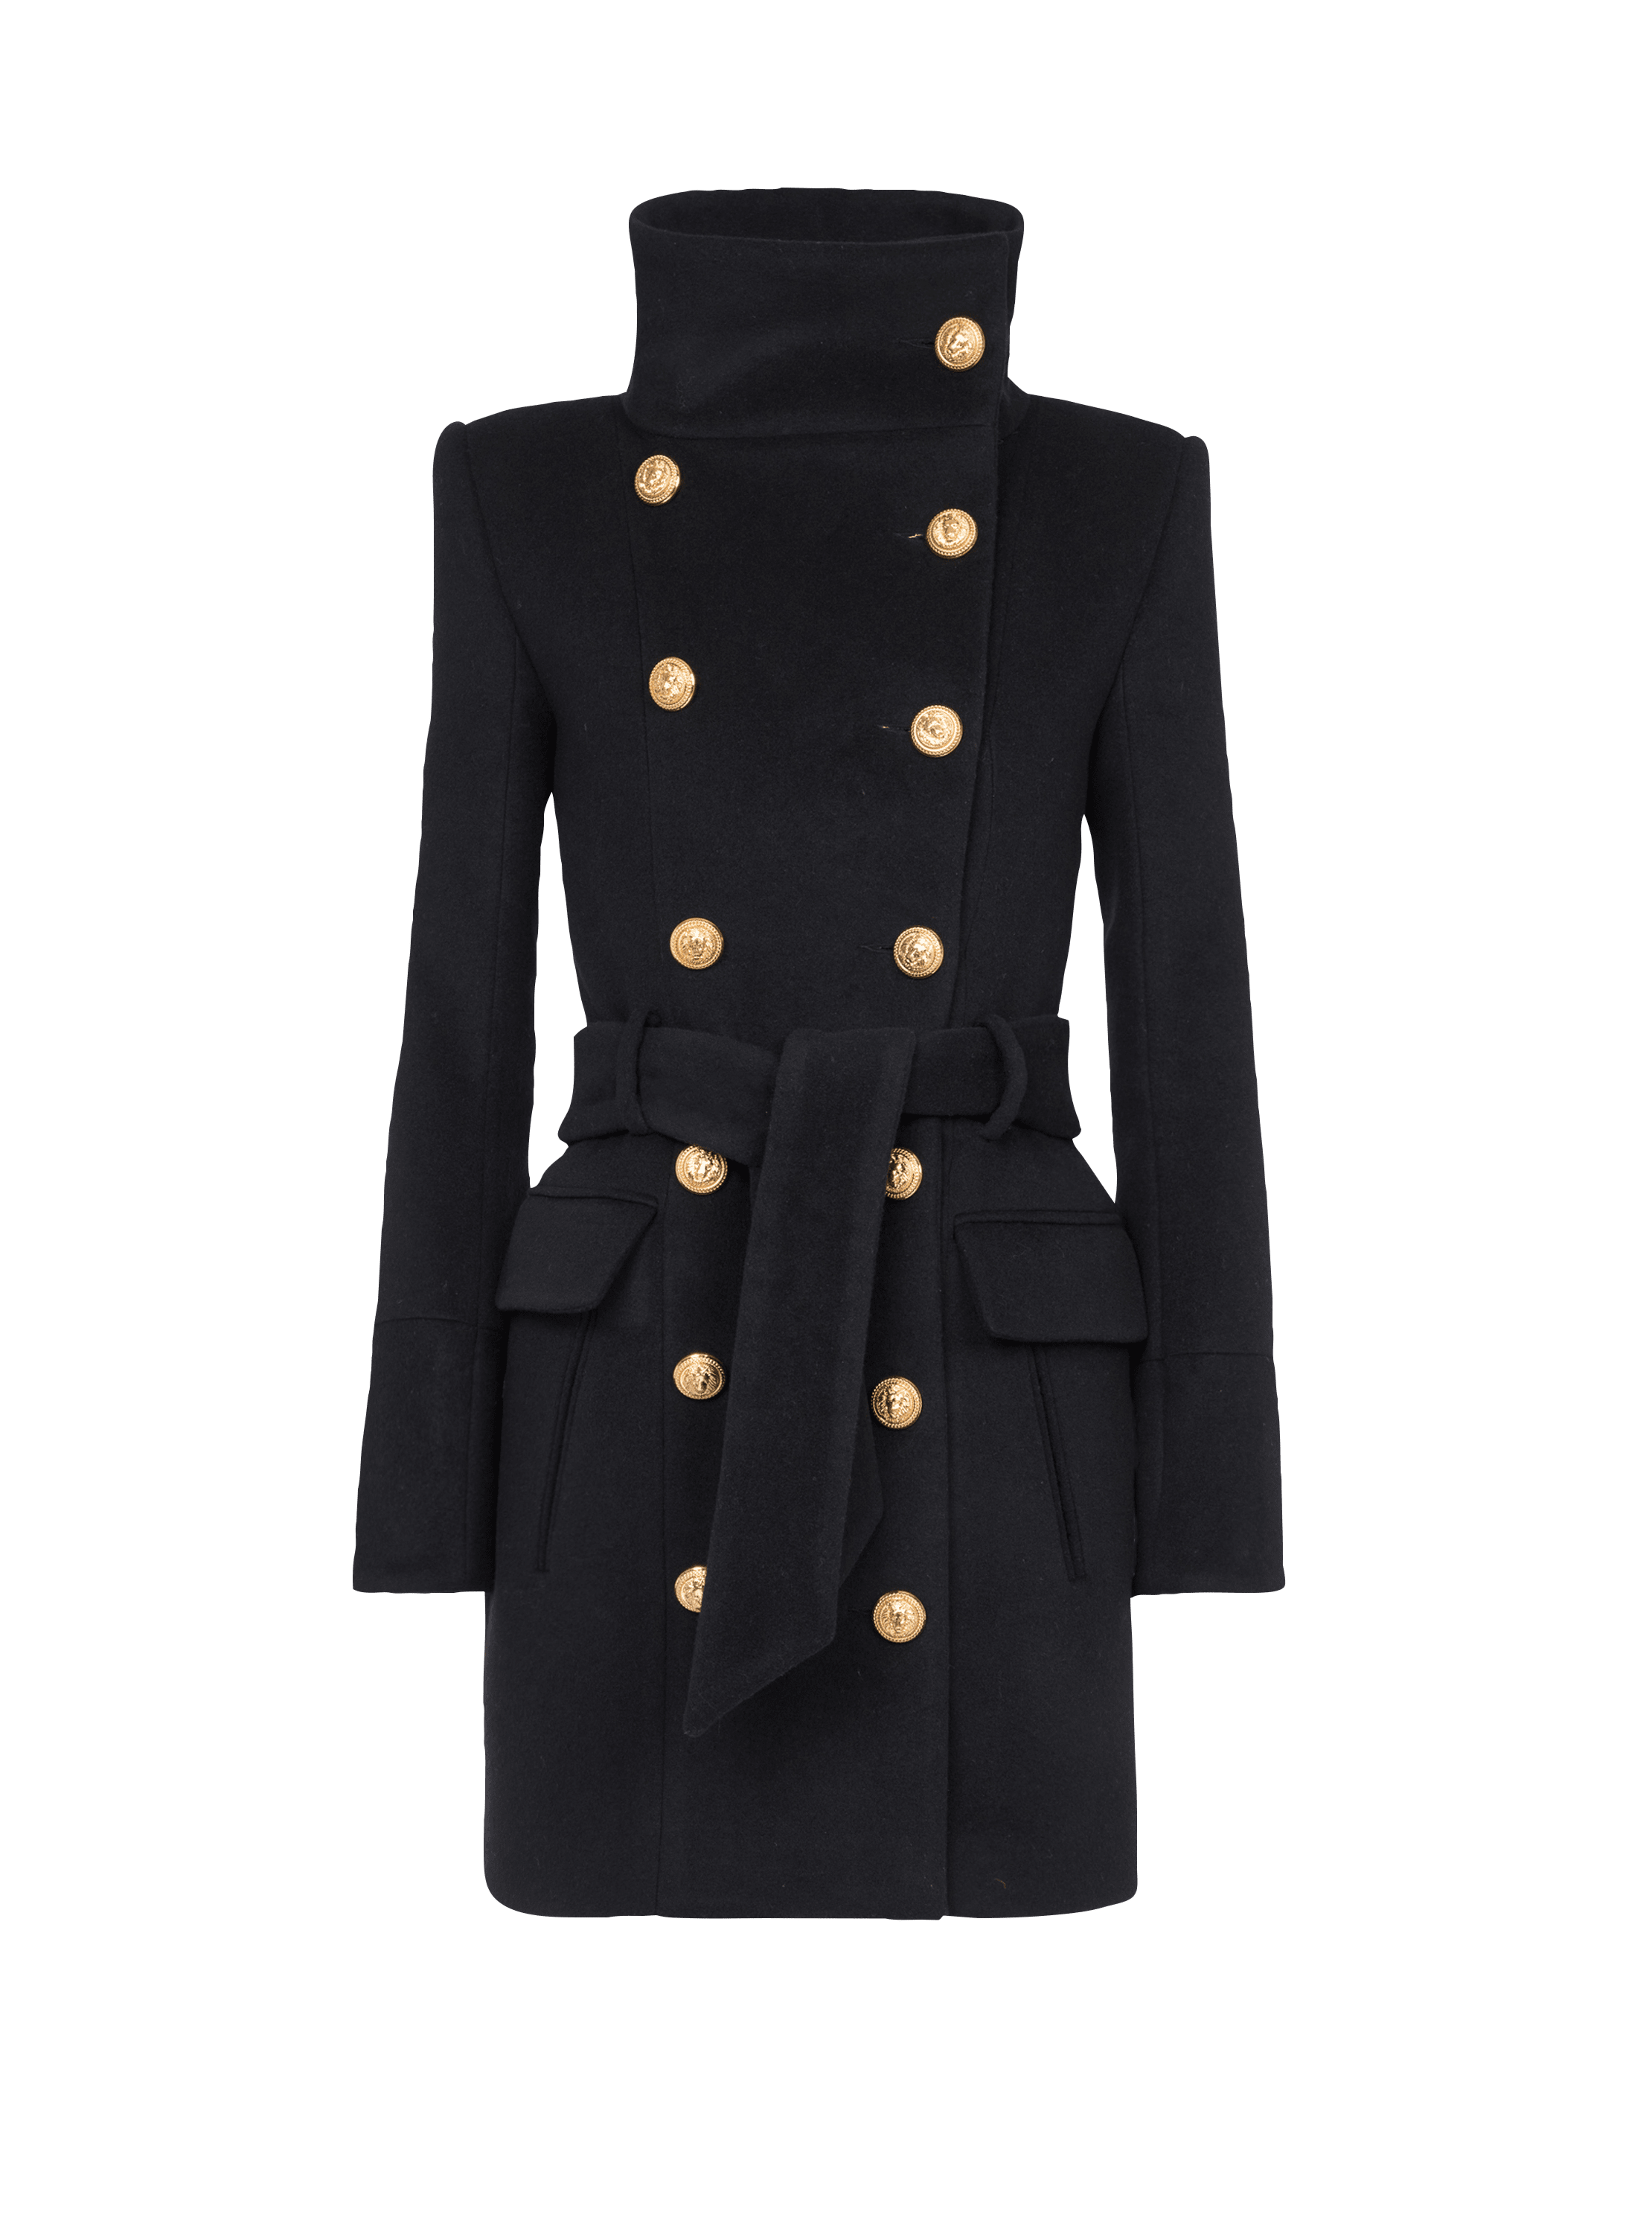 Cappotto lungo in lana con chiusura doppiopetto e bottoni dorati, nero, hi-res